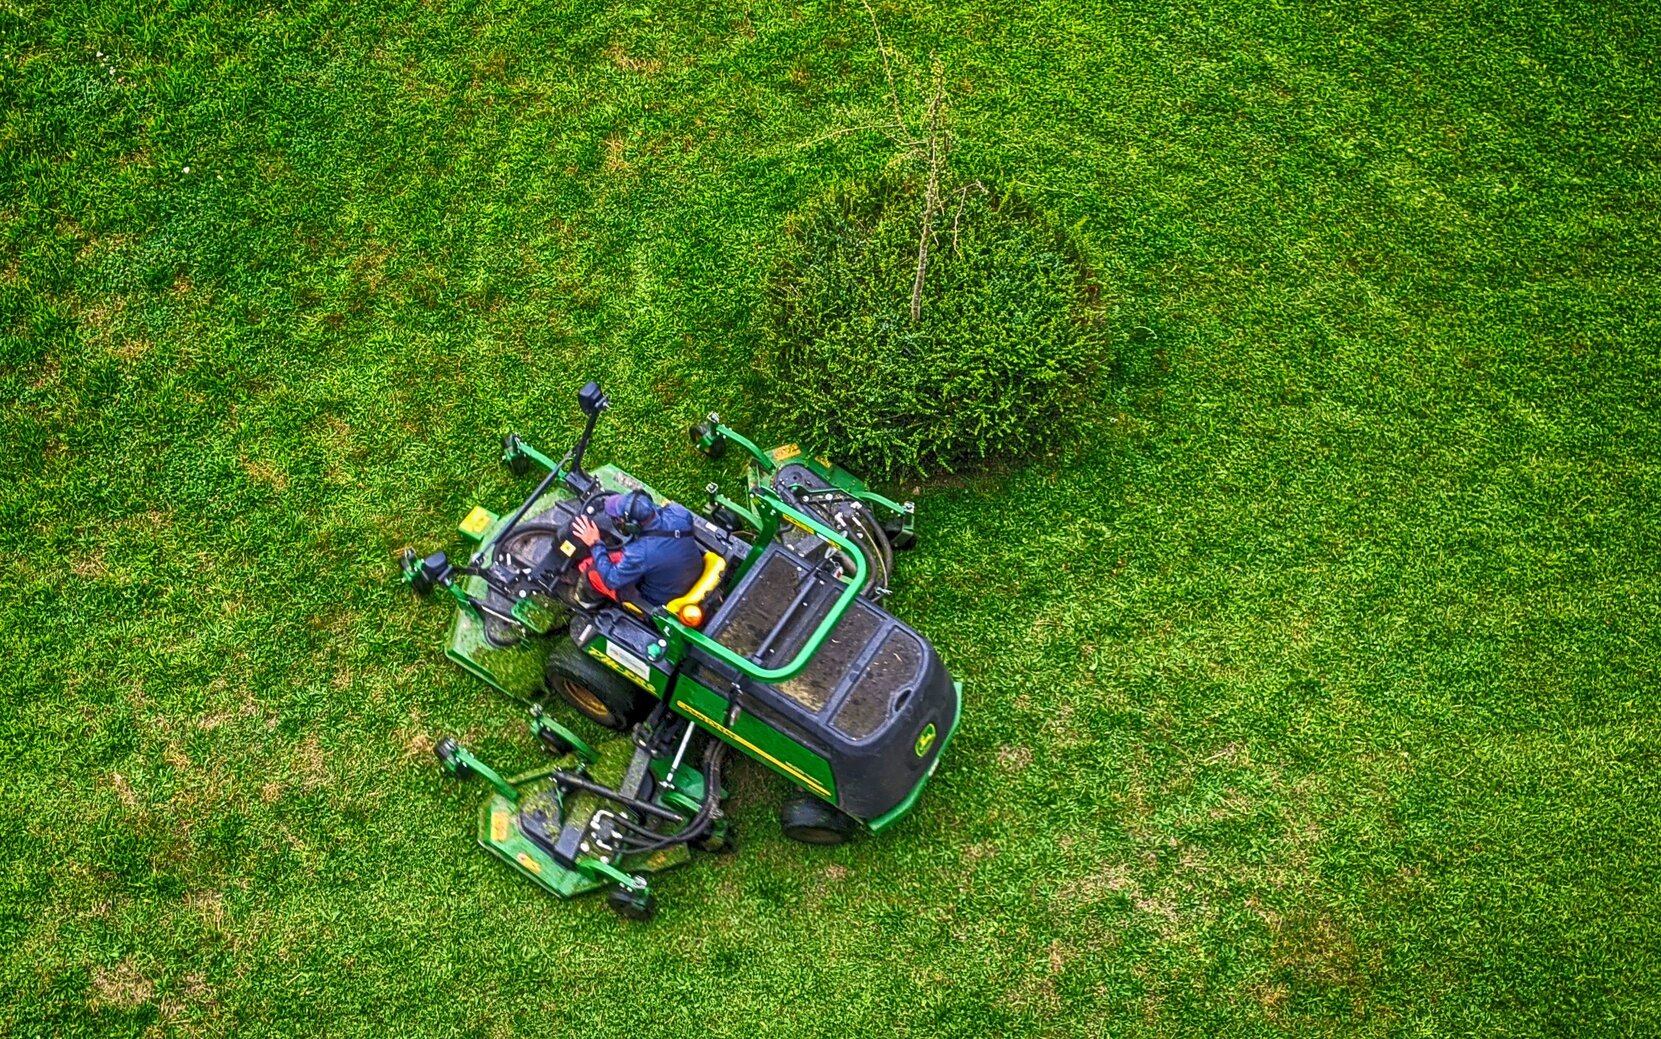 Rozbudowana kosiarka do koszenia trawy, na tle zielonego przystrzyżonego trawnika 